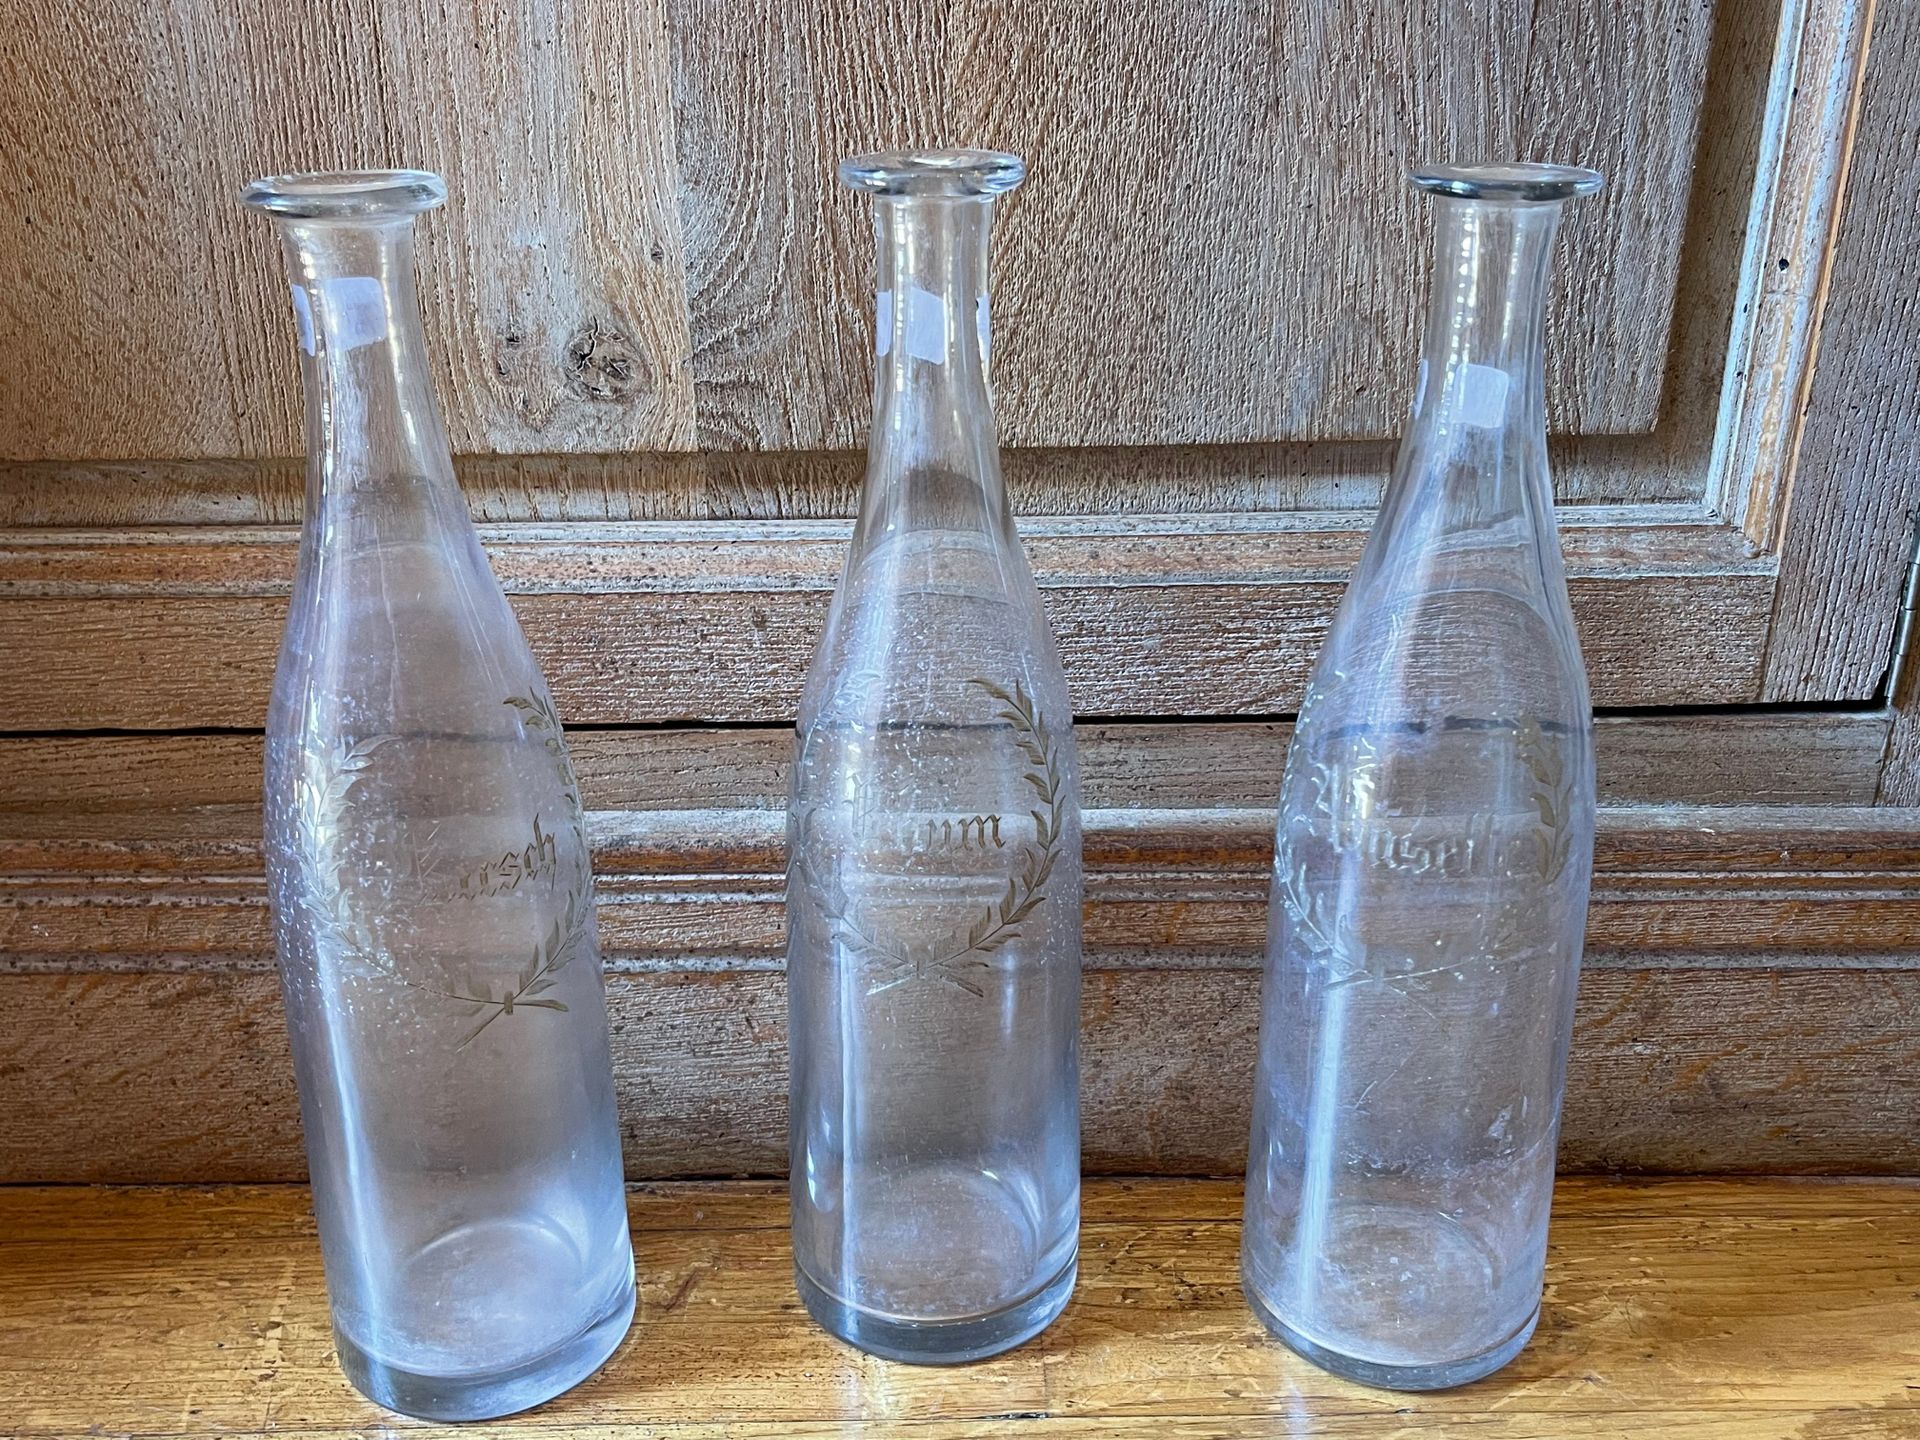 Null Tres botellas de vidrio grabadas "Rhum, Anisette, Kirsh